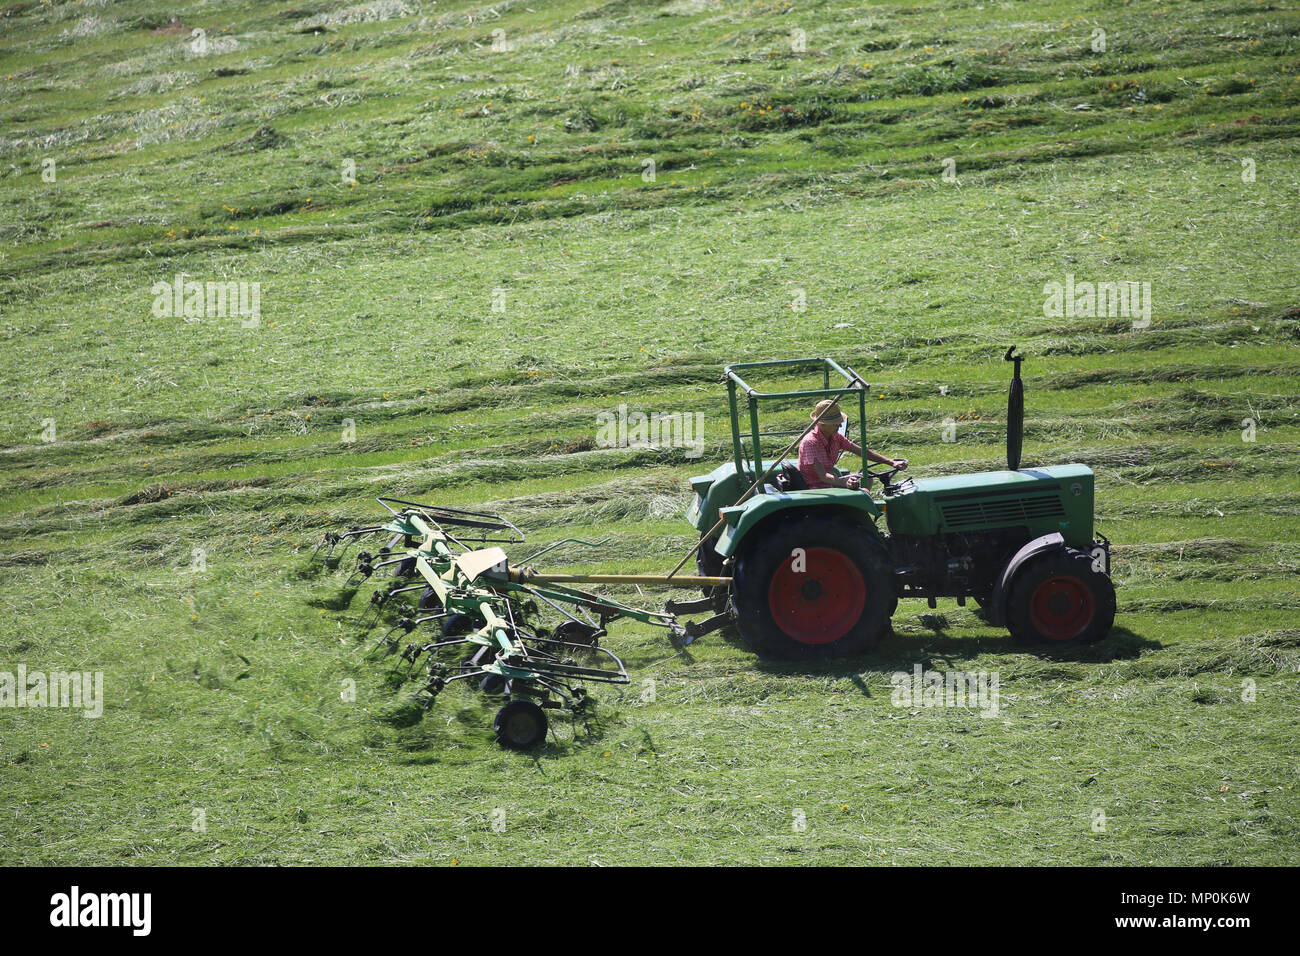 Gli agricoltori il raccolto di un campo con l'aiuto di macchine agricole - Bauern ernten ein feld mit hilfe von landwirtschaftlichen Maschinen Foto Stock